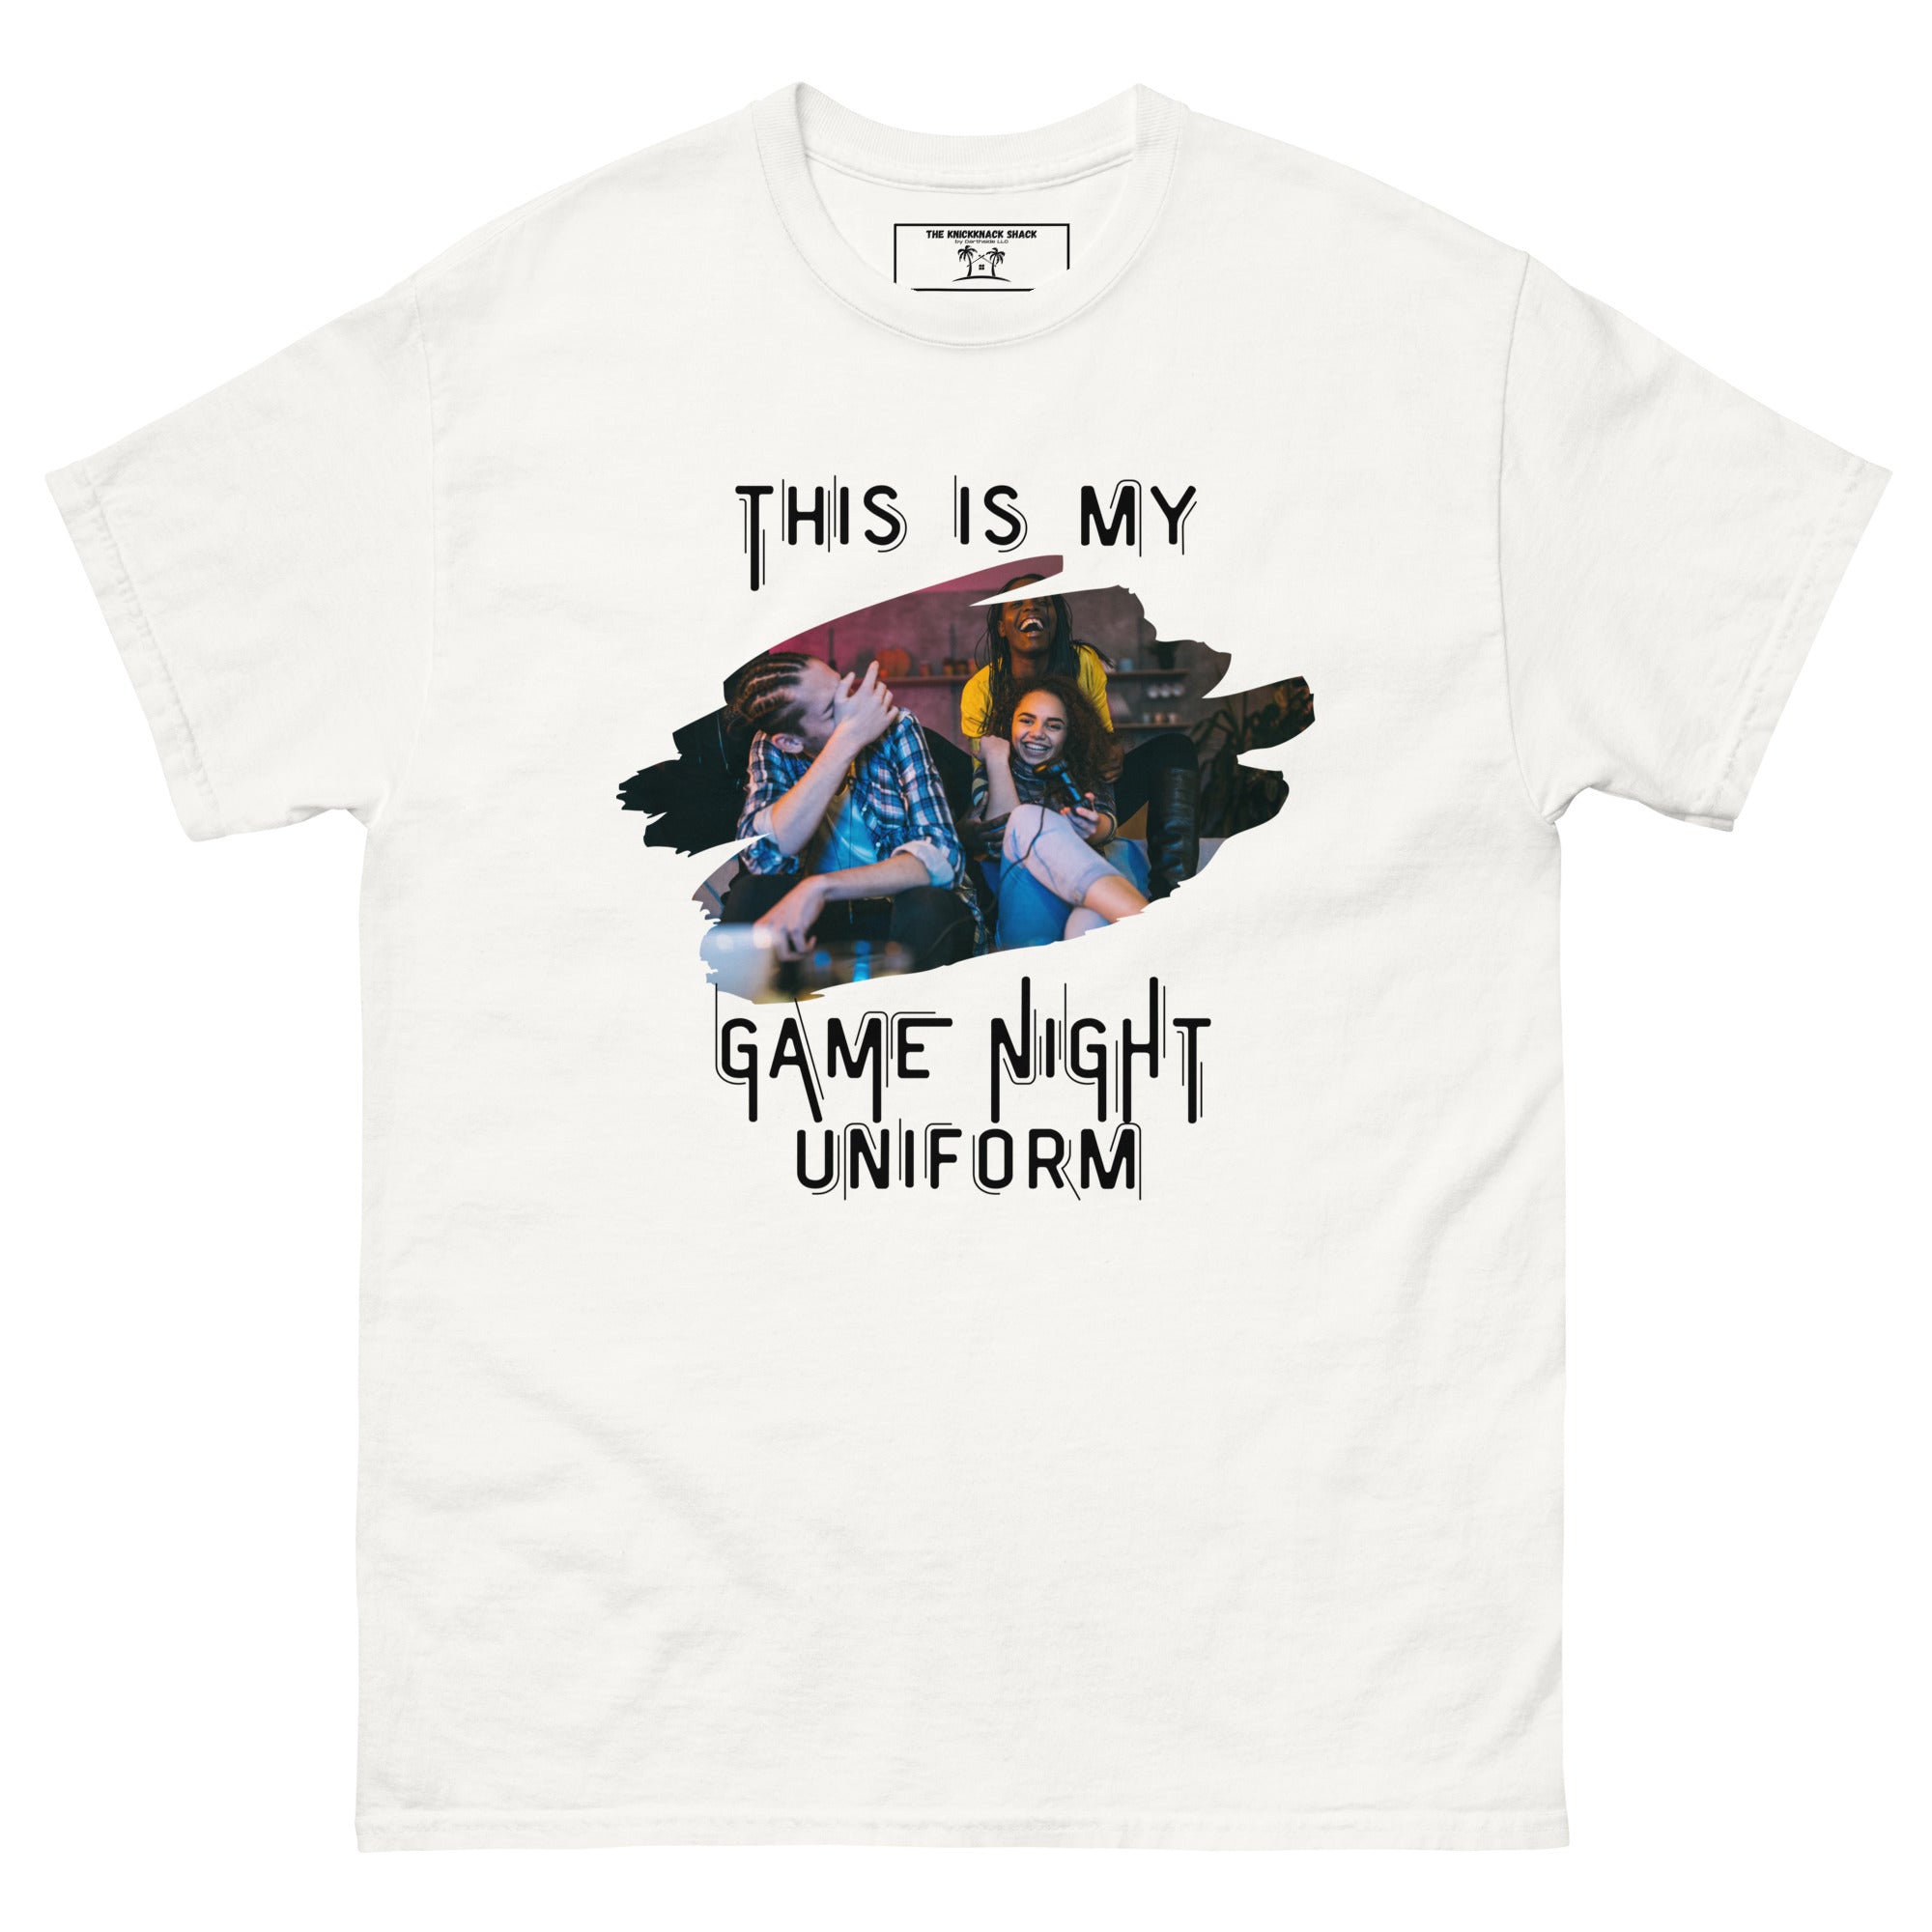 Camiseta clásica - Uniforme de noche de juegos (colores claros)